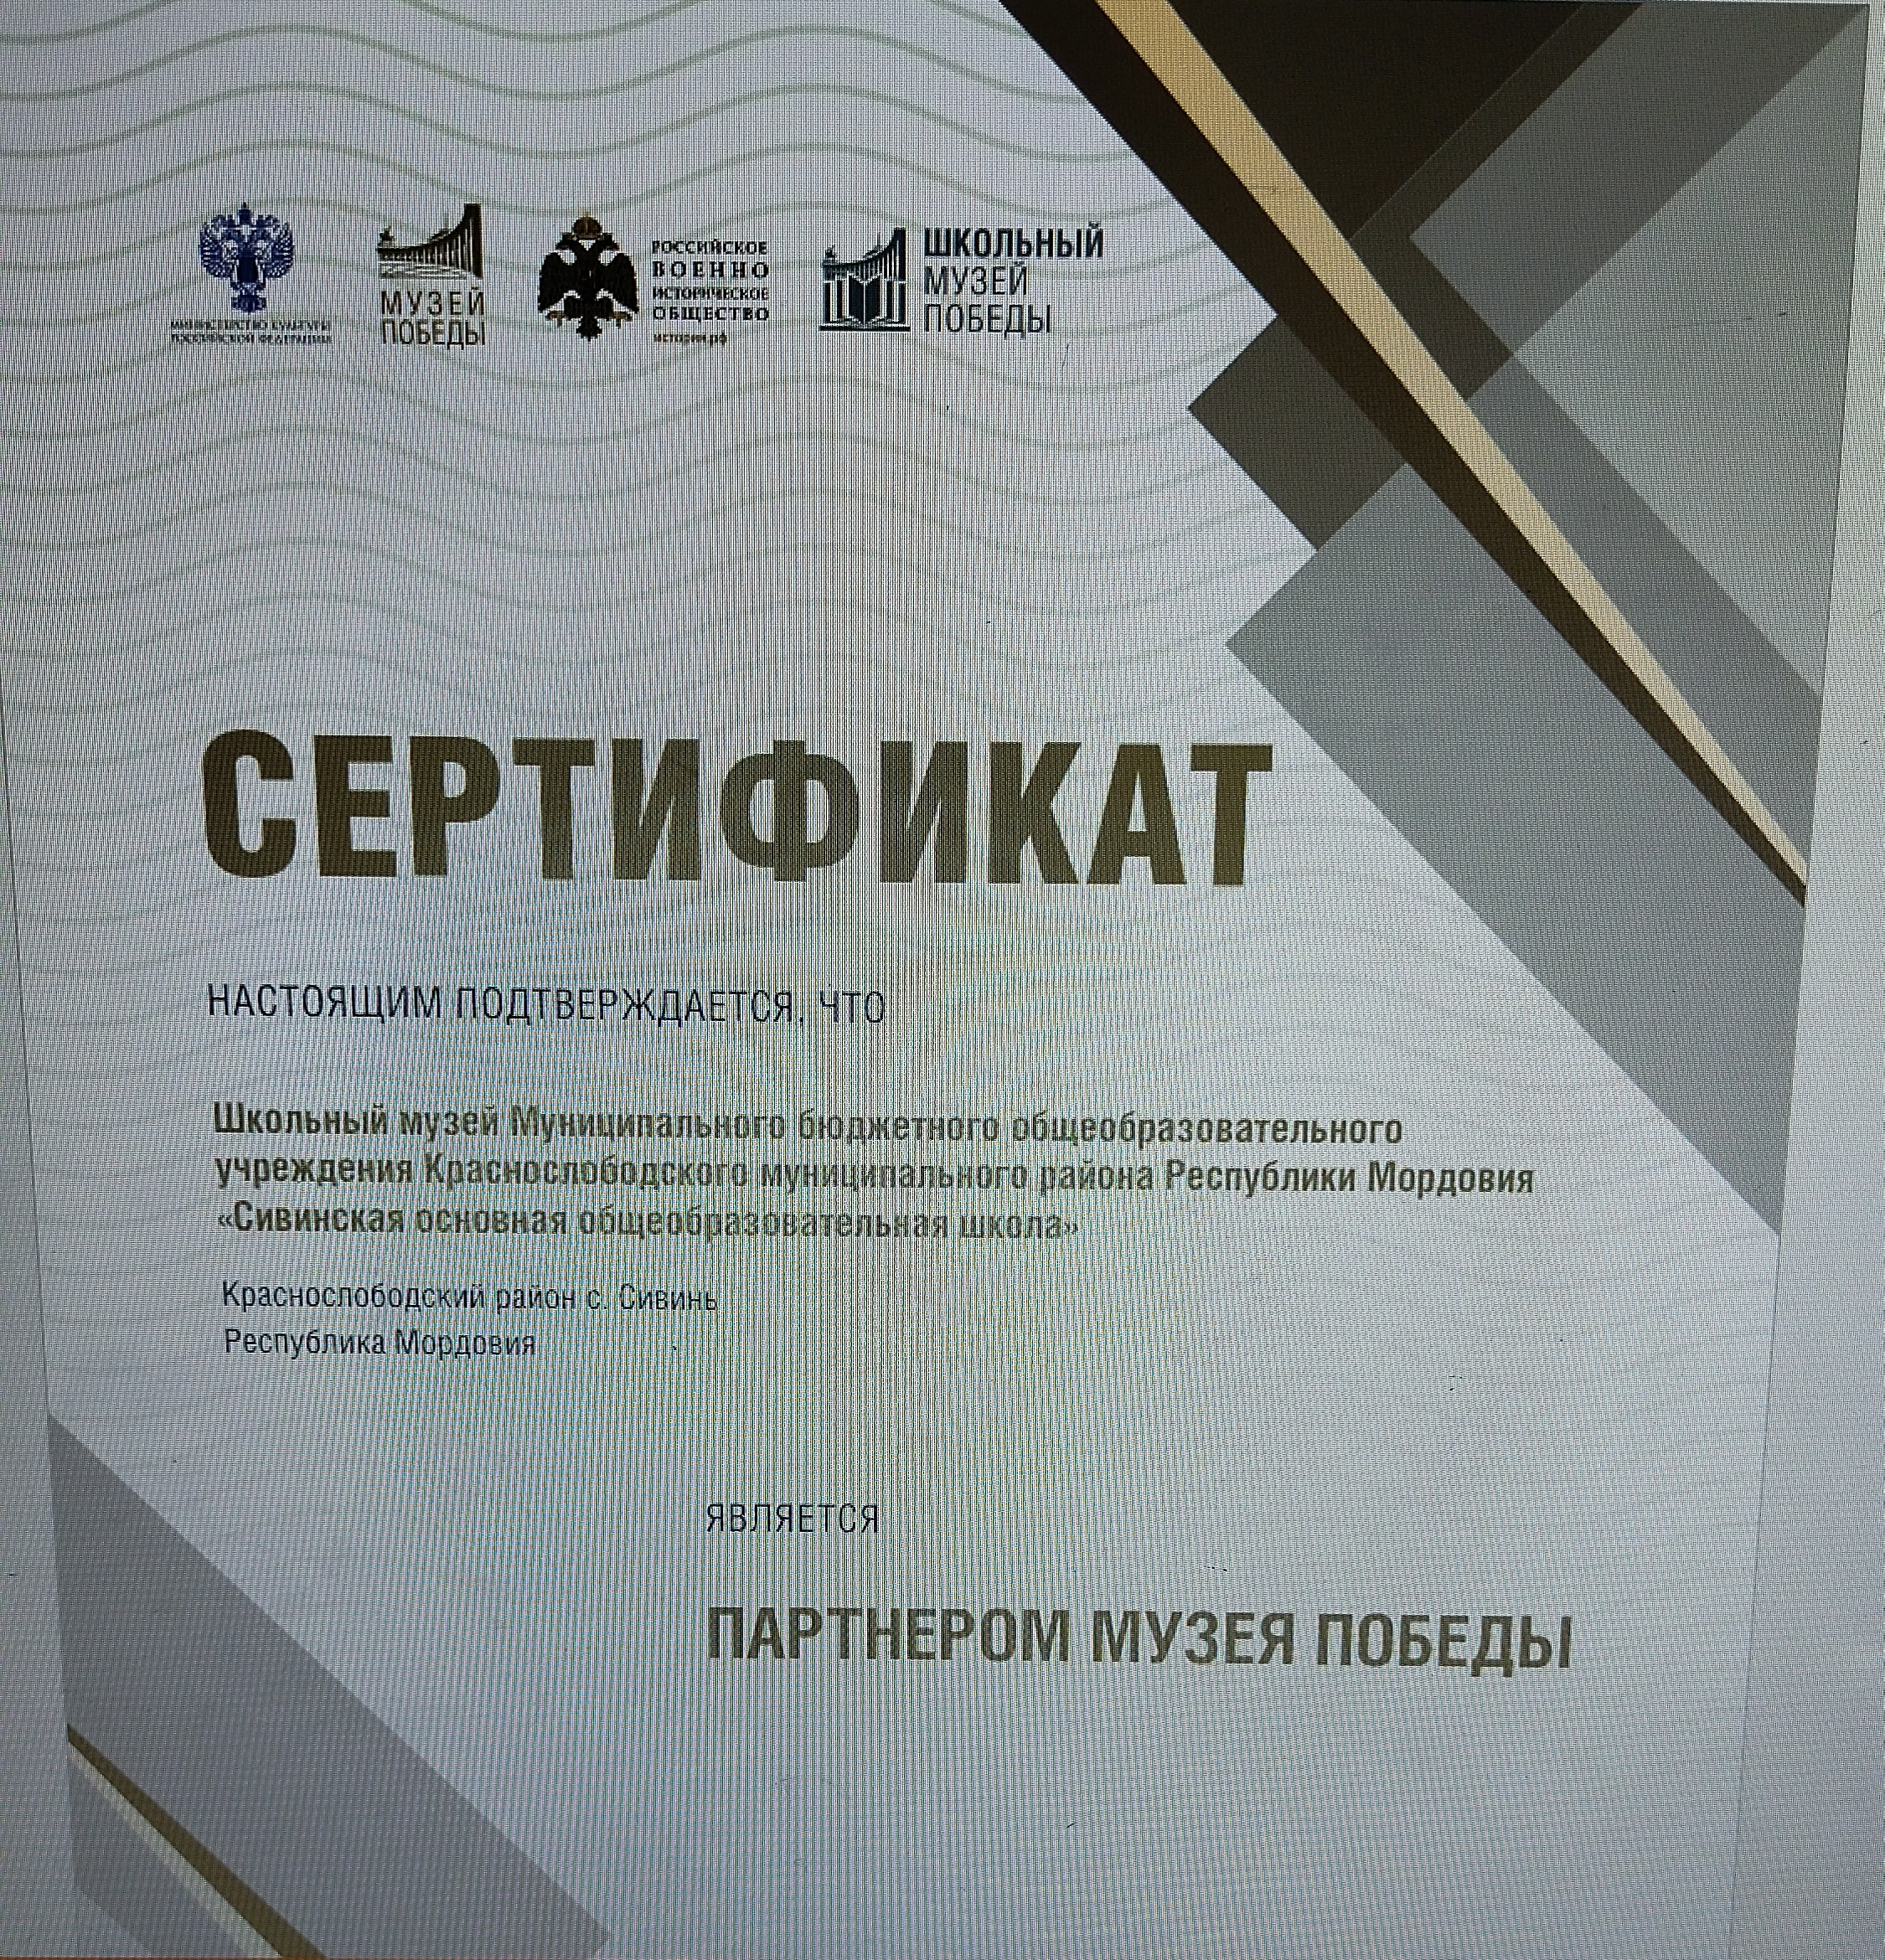 Сертификат о партнерстве с музеем Победы